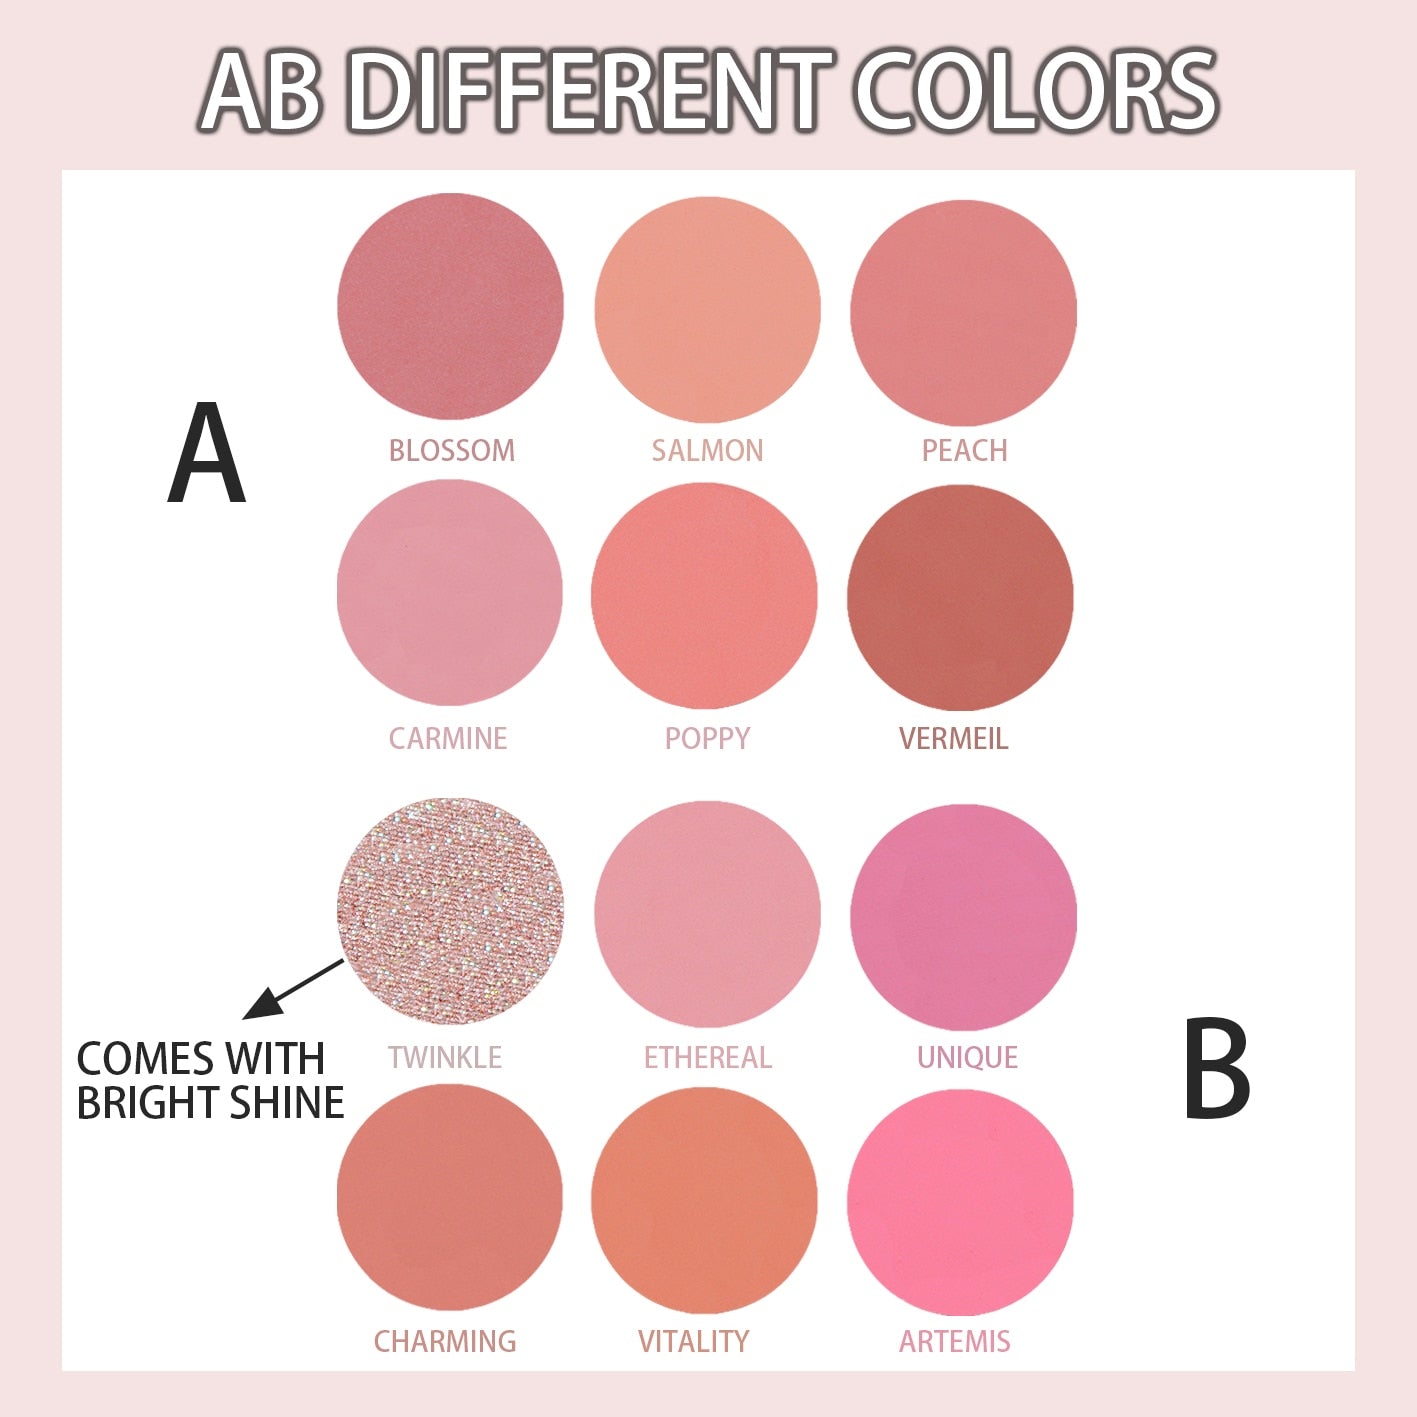 6-Color Peach Blush Palette